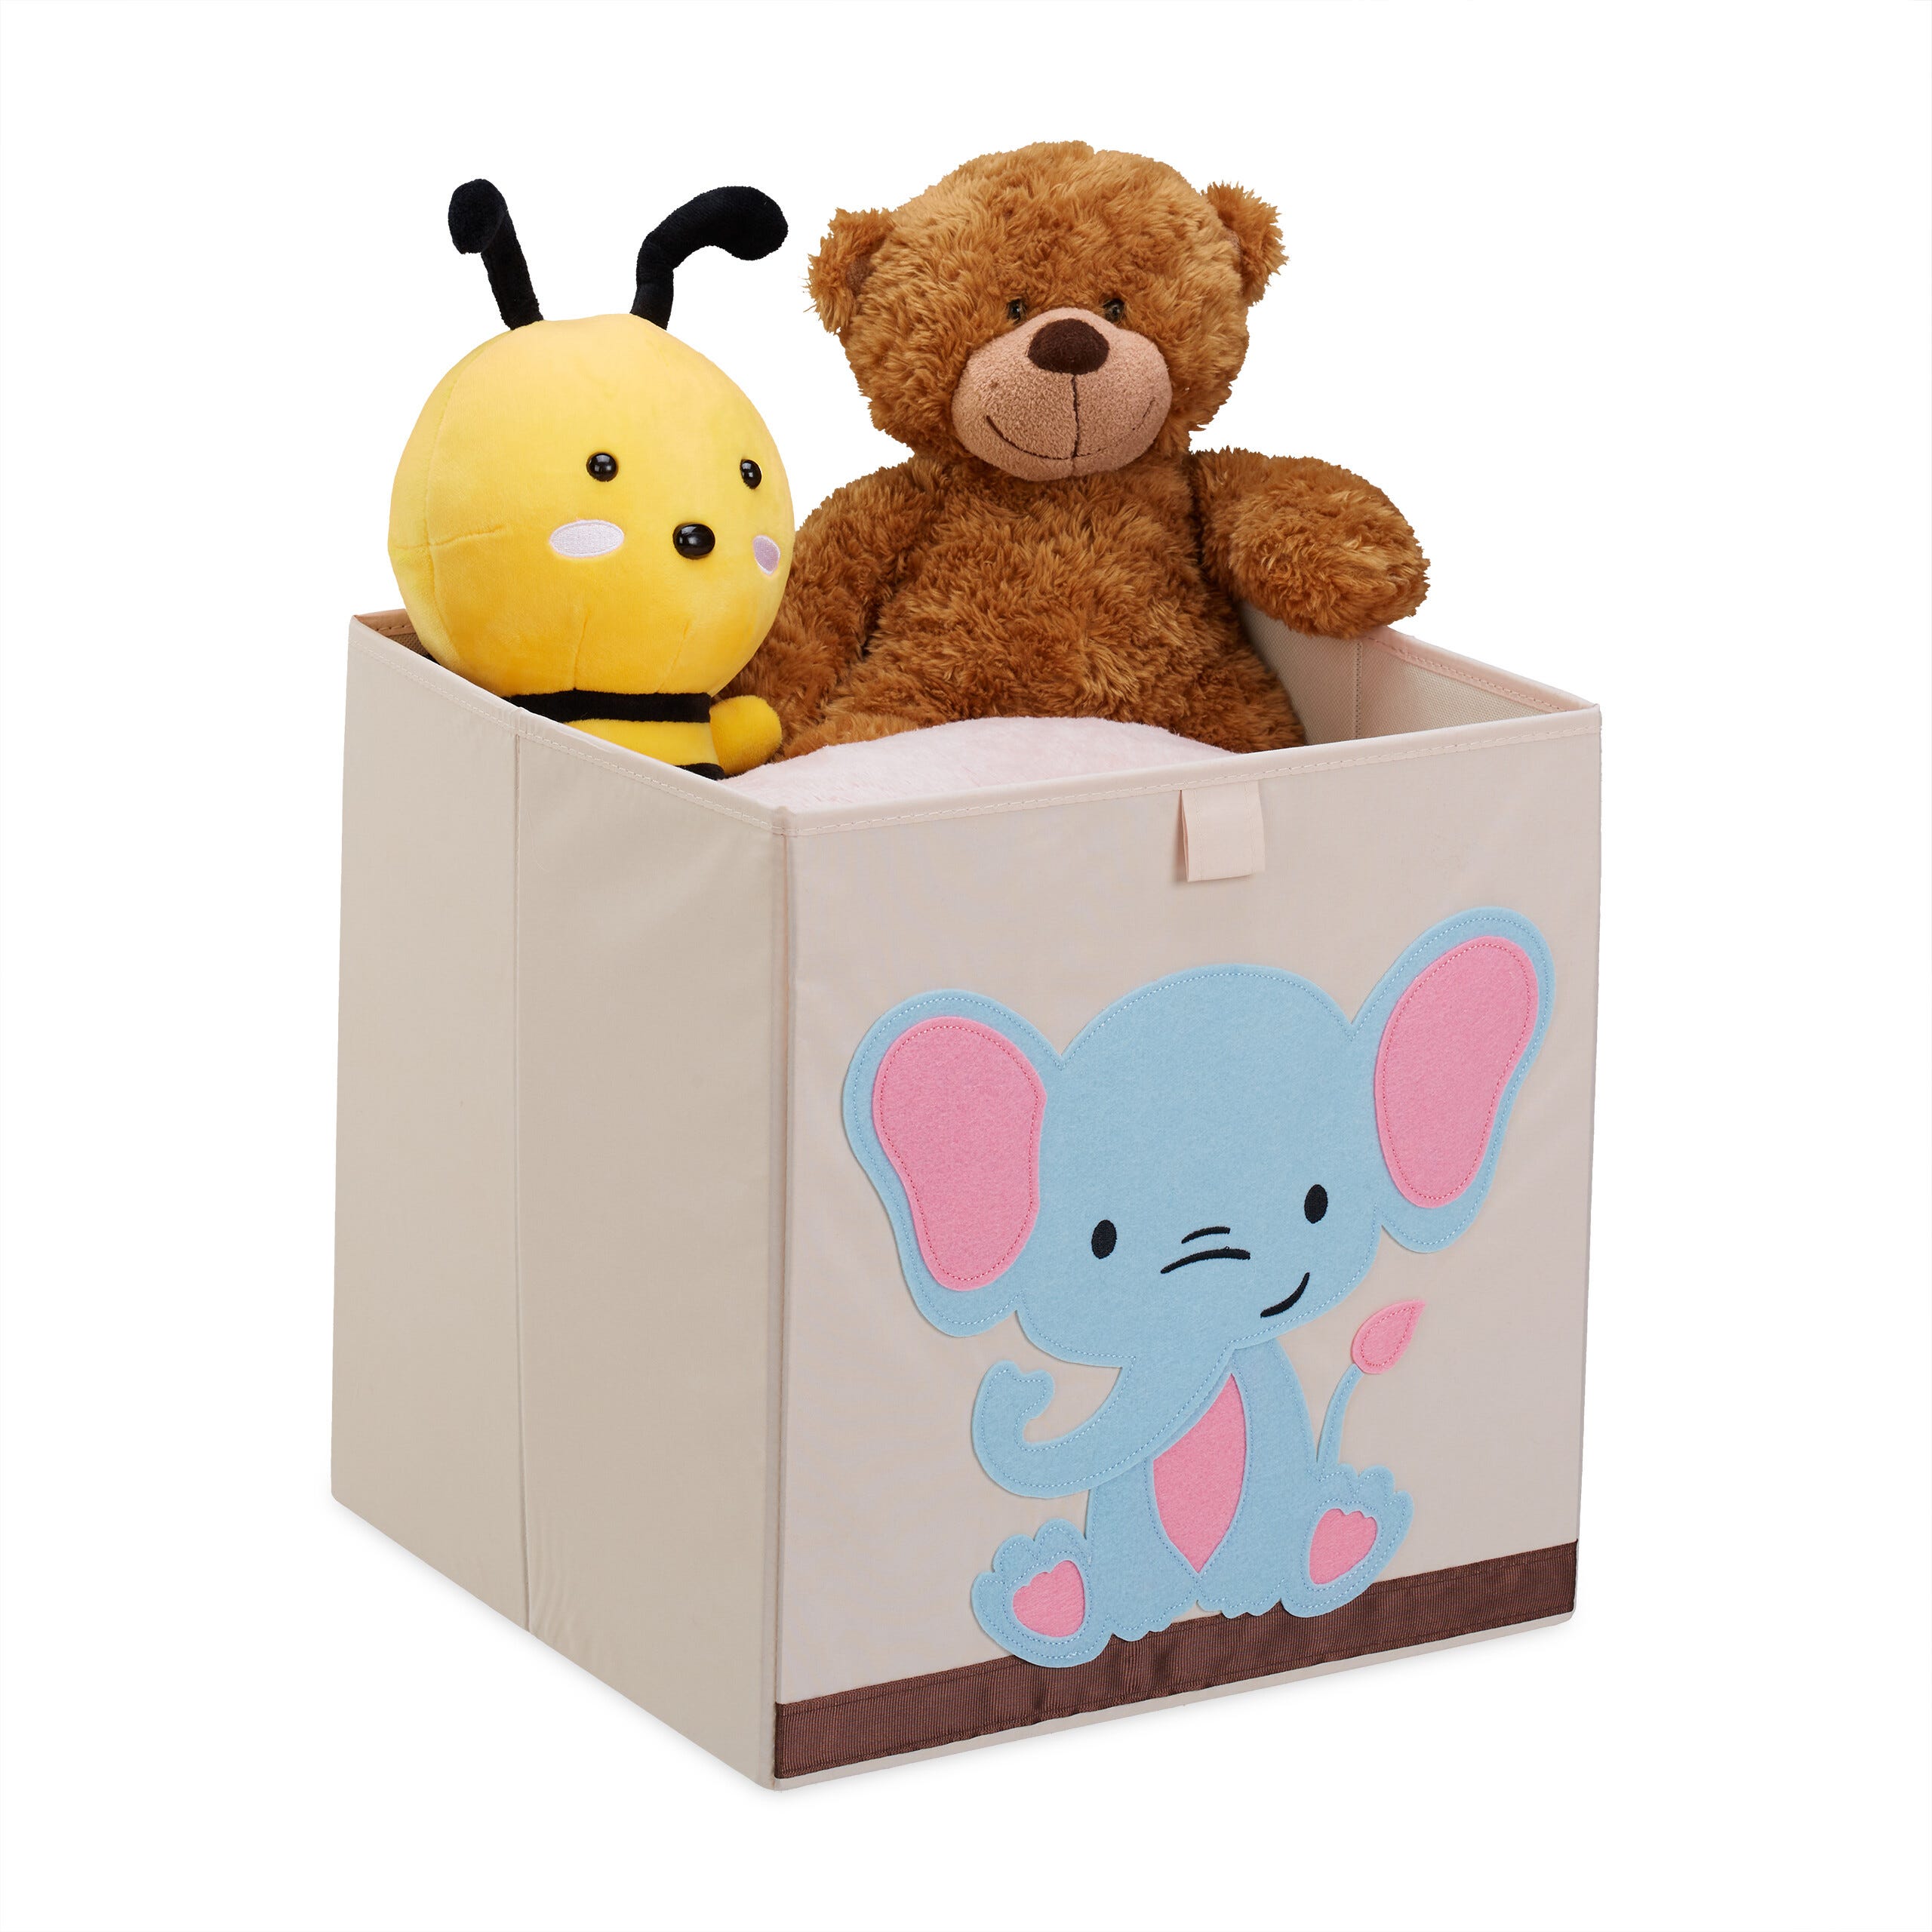 Relaxdays Bac de rangement pour enfants, motif éléphant, HxLxP : 33x33x33  cm, boîte tissu, panier à jouets, beige/bleu